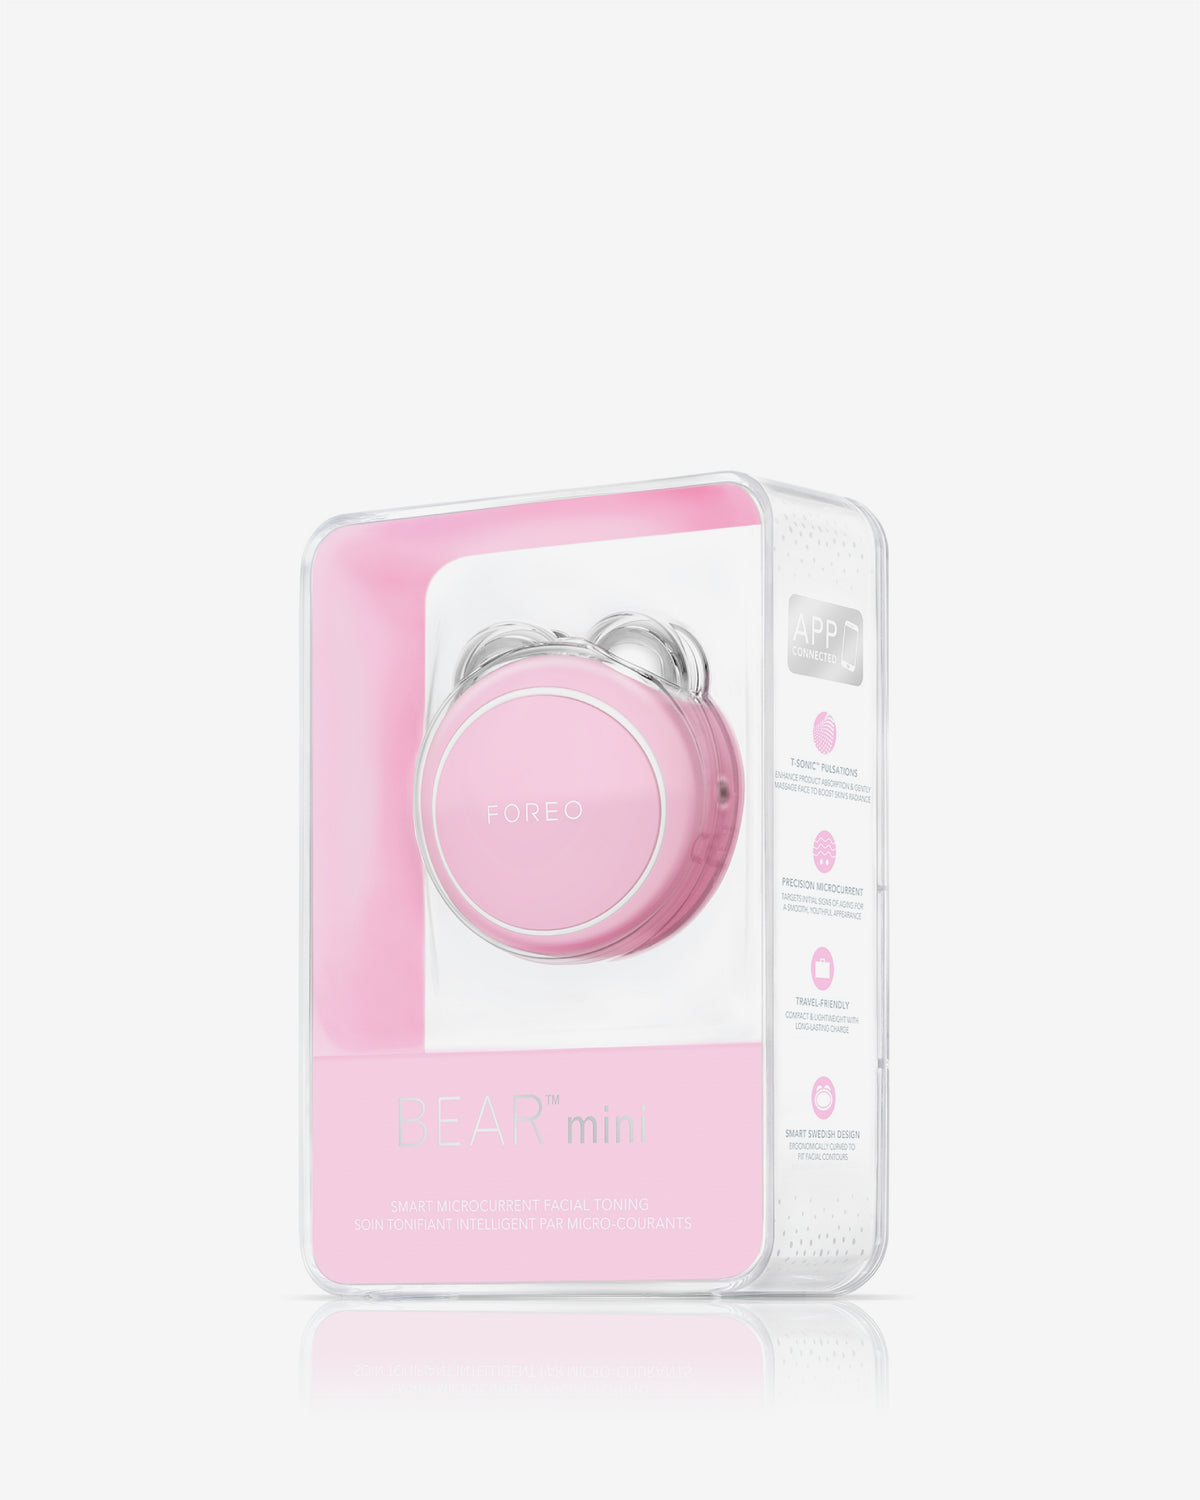 Bear mini Pearl Pink